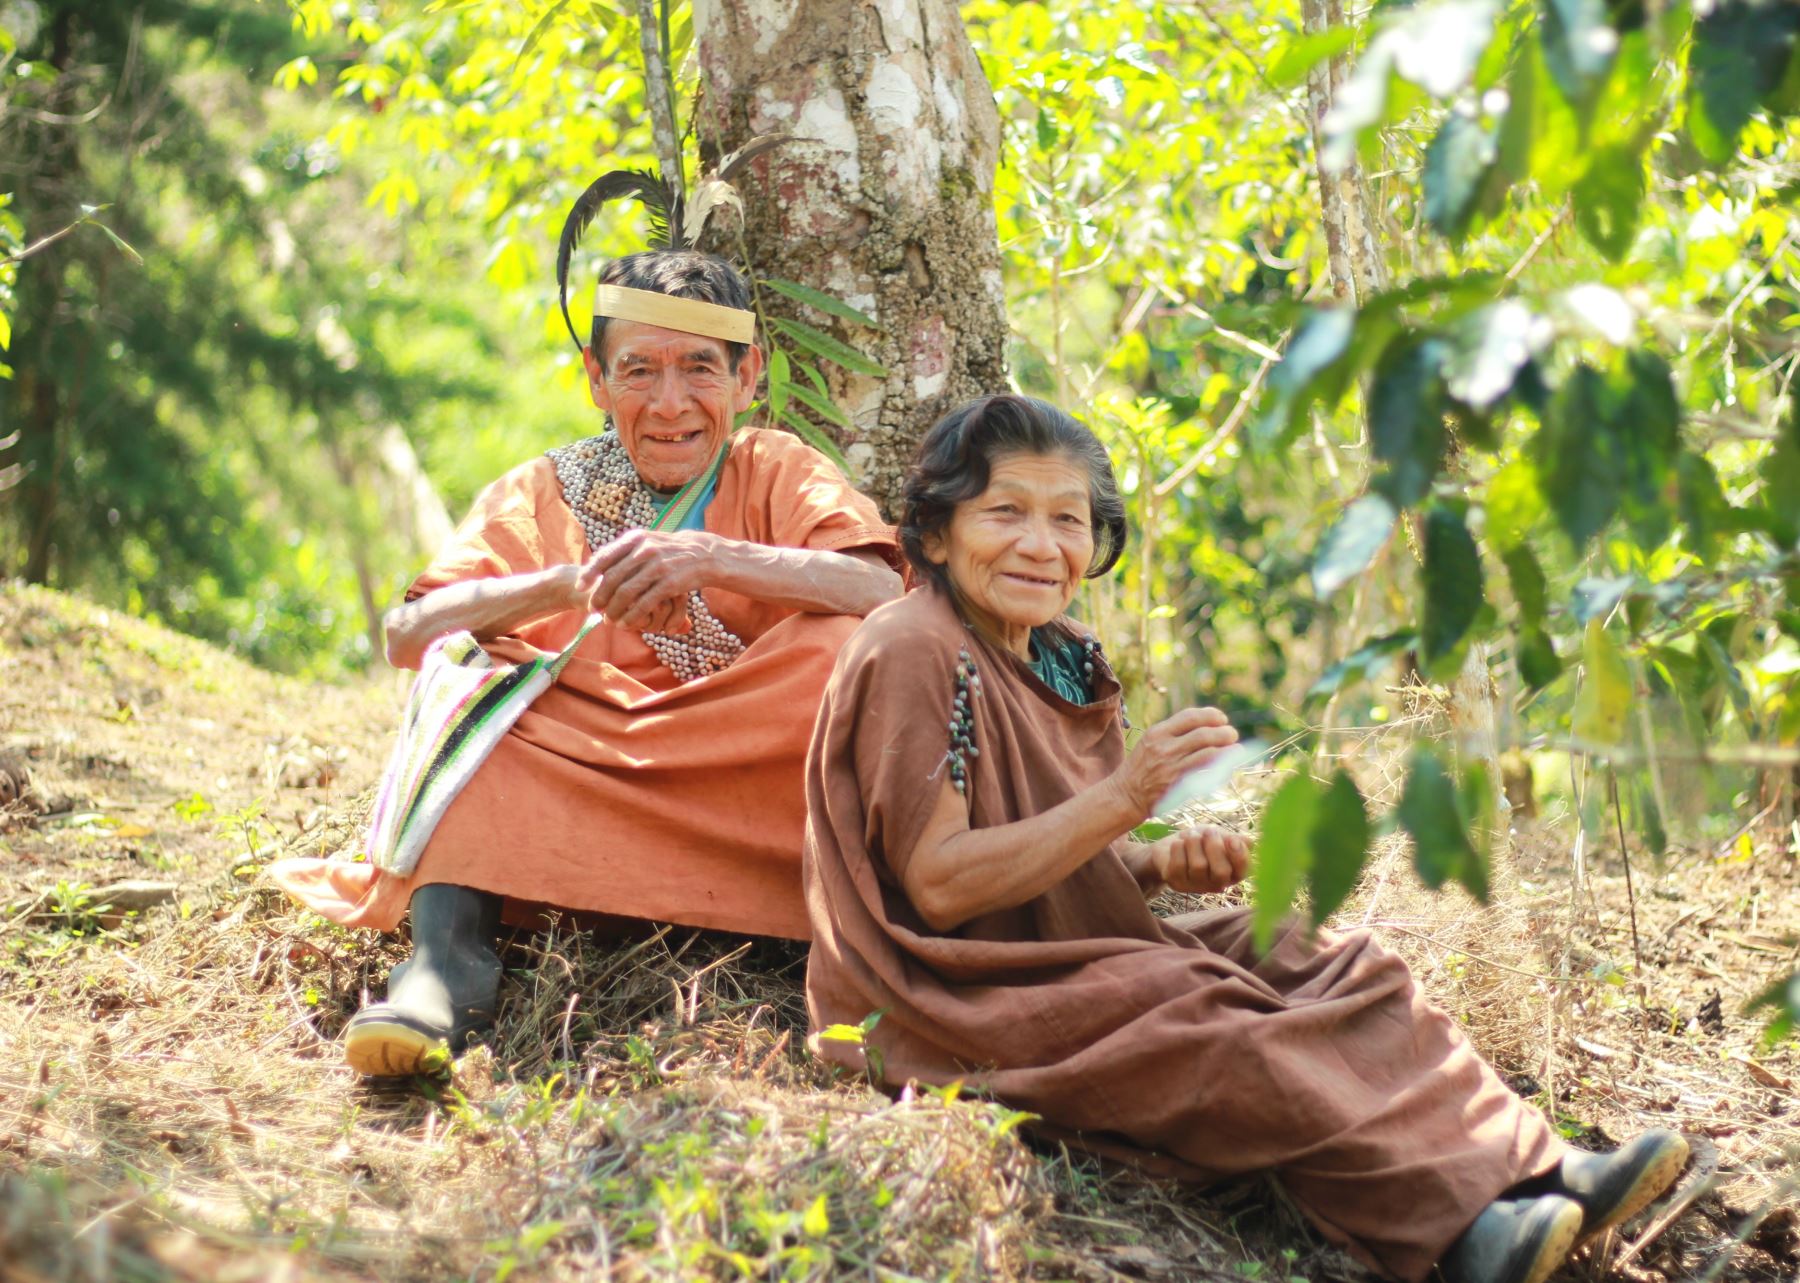 Productores adultos mayores de Huánuco y Pasco emprenden negocios de café con apoyo de sus comunidades y del programa Pensión 65.